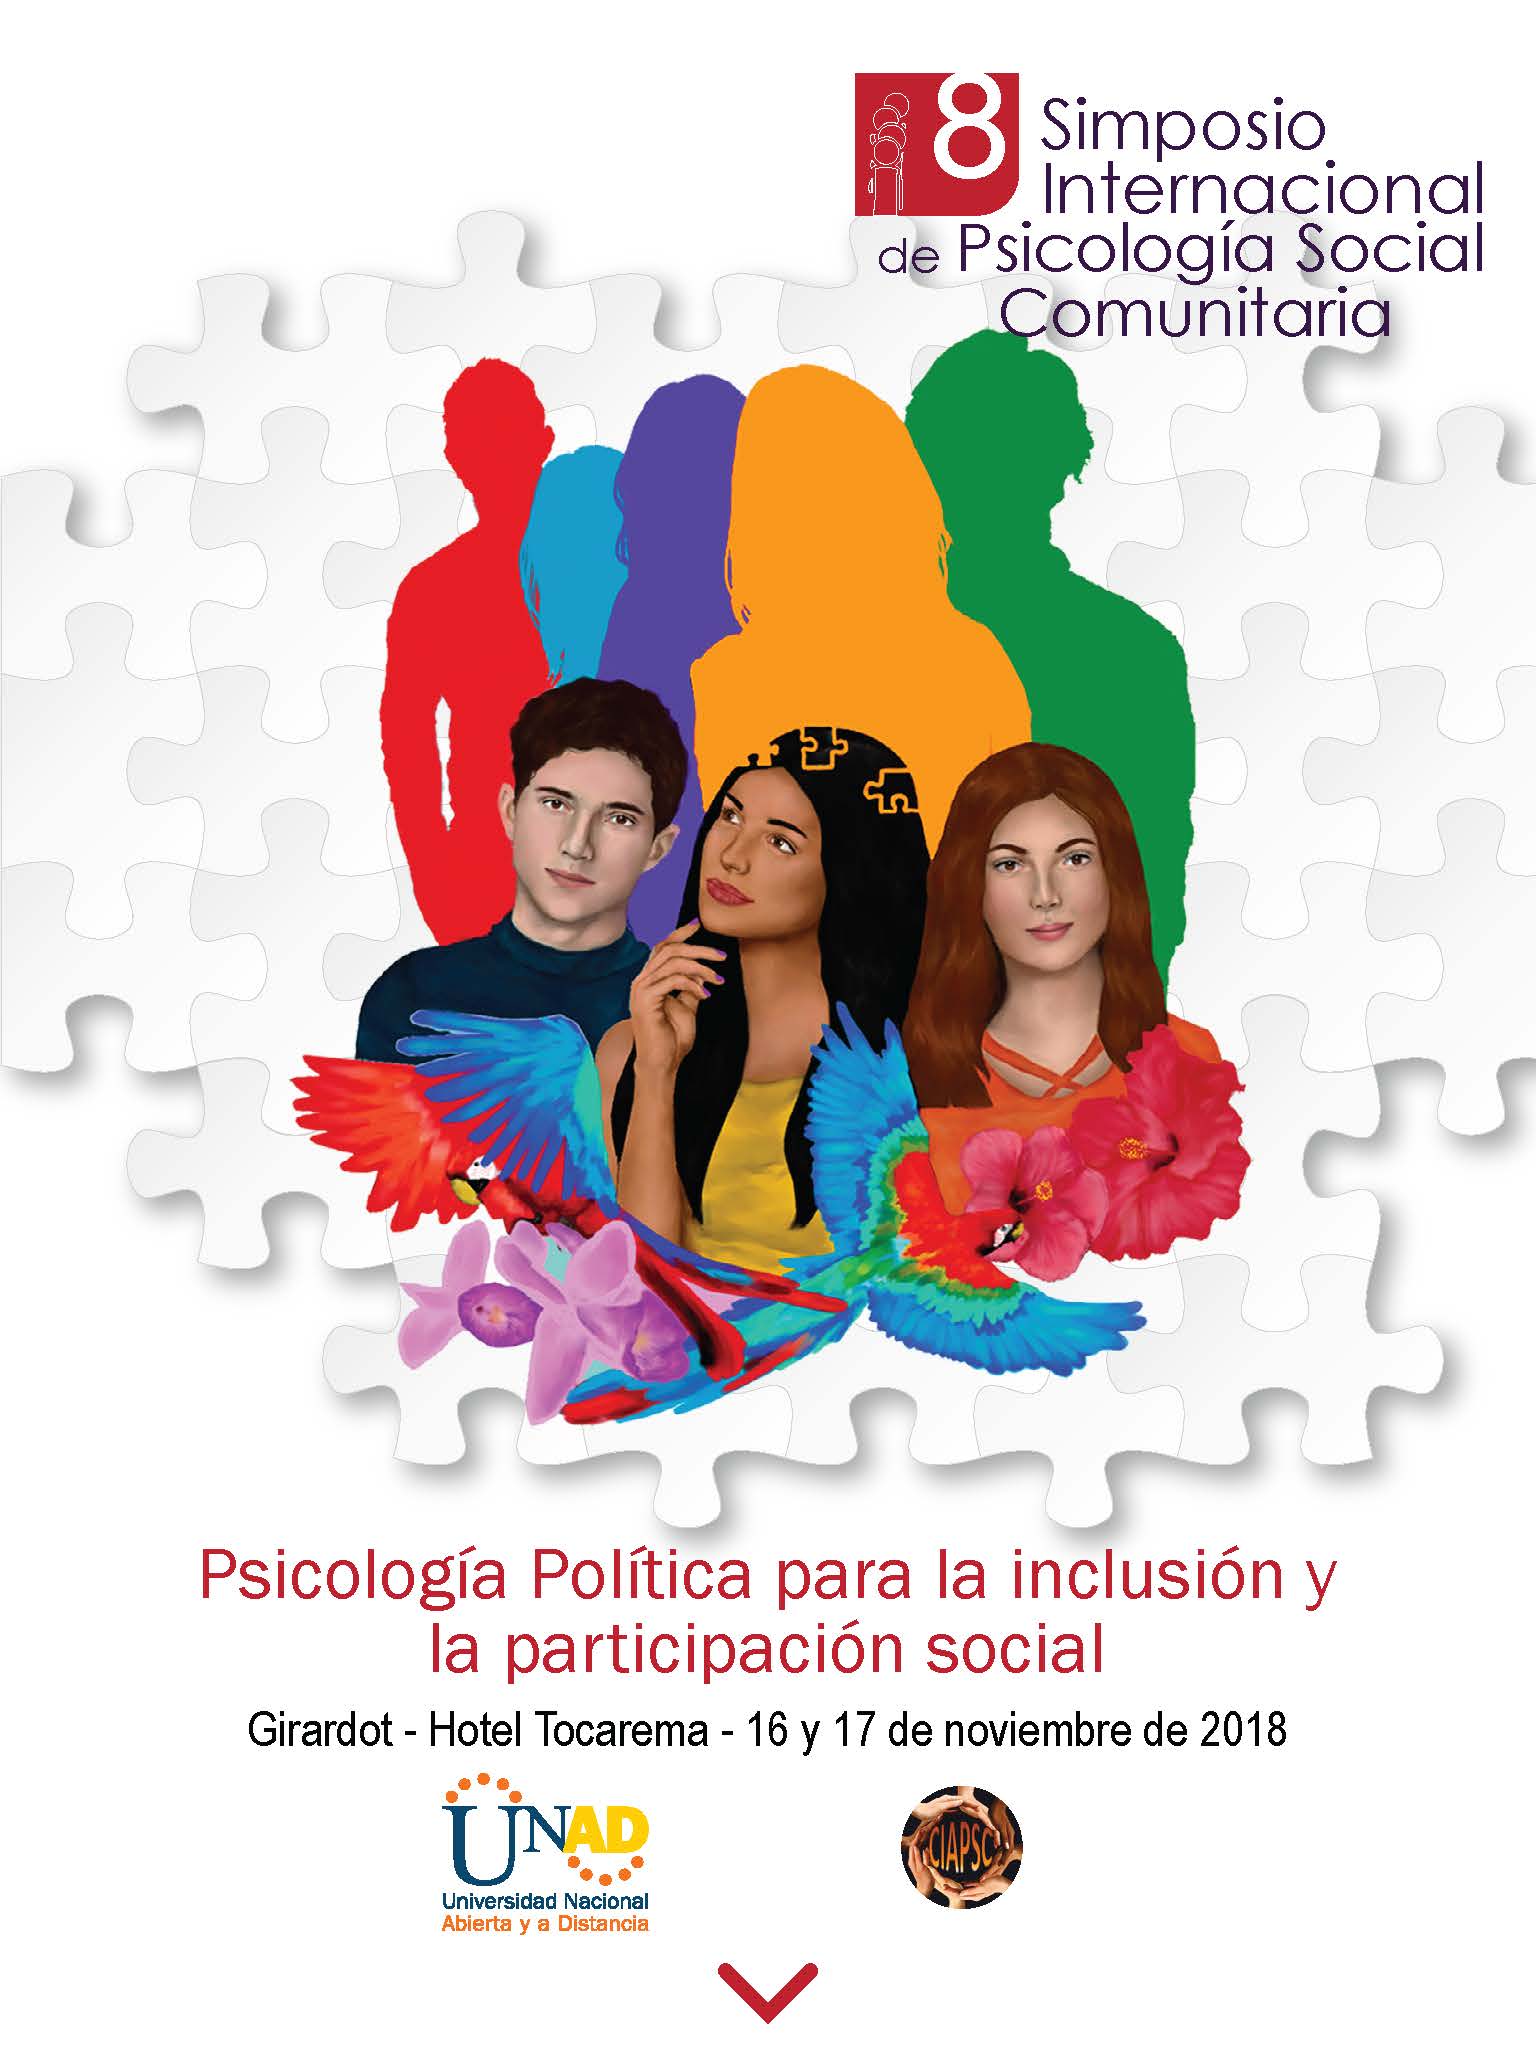 8 simposio internacional de psicología social comunitaria